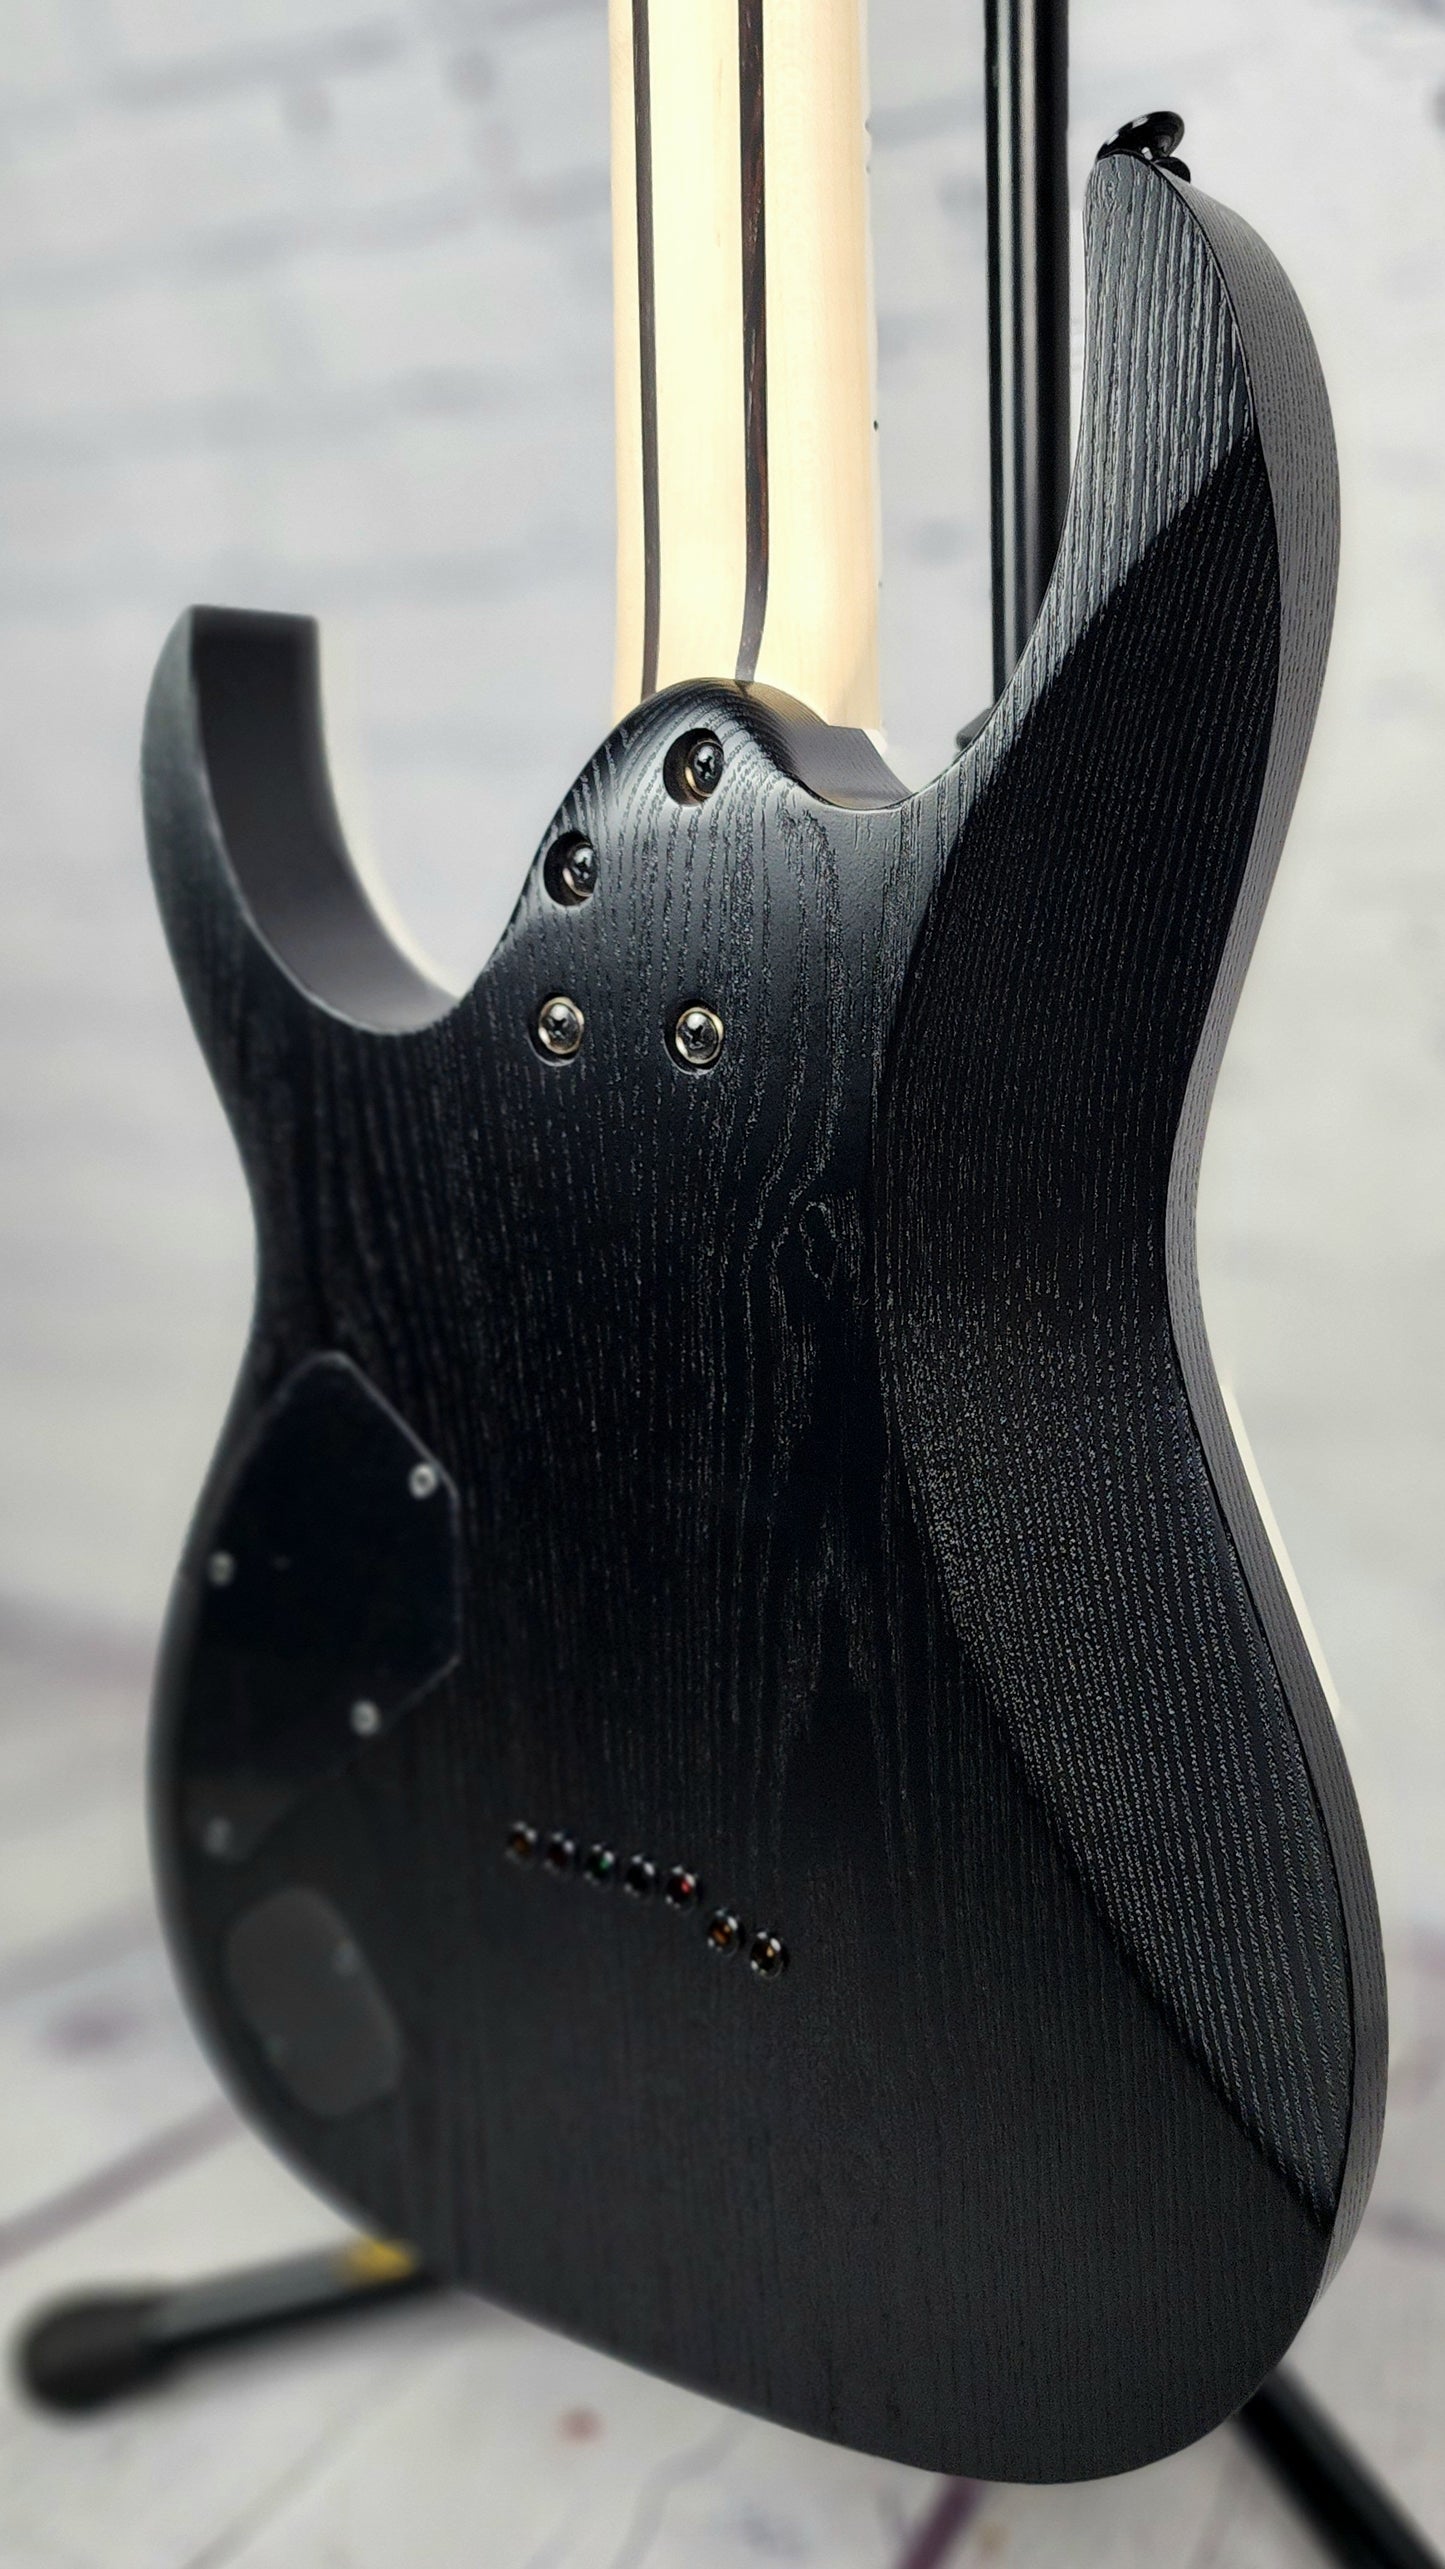 Ibanez Prestige RGR752AHBF WK 7 String Electric Guitar Weathered Black